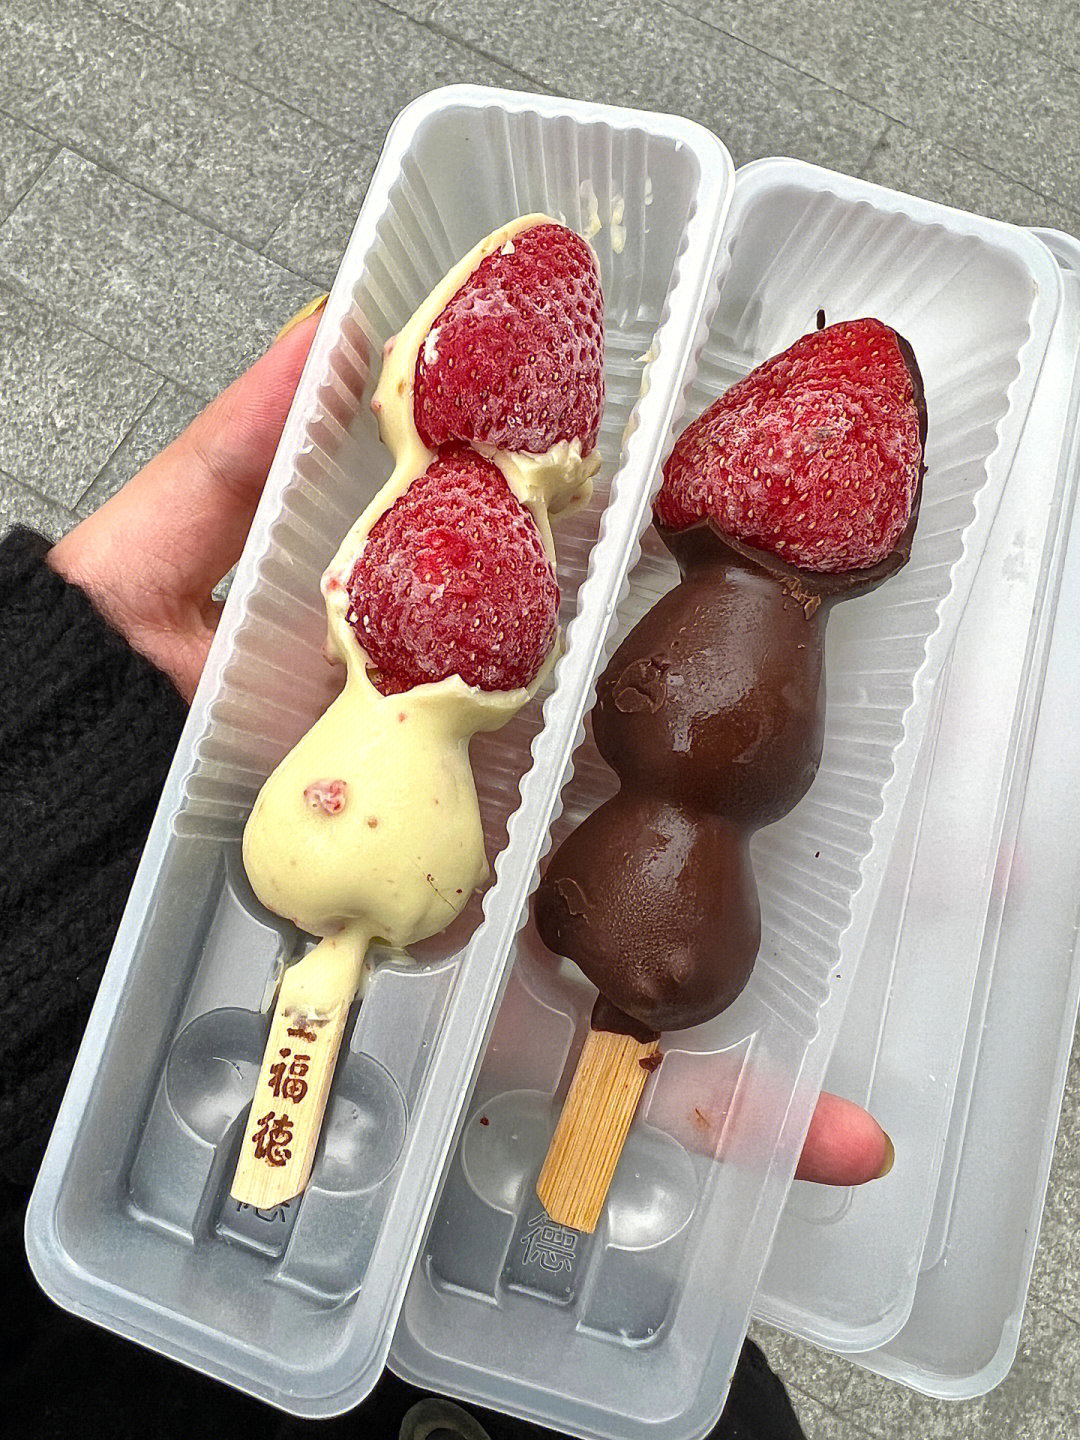 罗森这个巧克力草莓冰淇淋好好吃 在小红书经常刷到这个巧克力脆皮